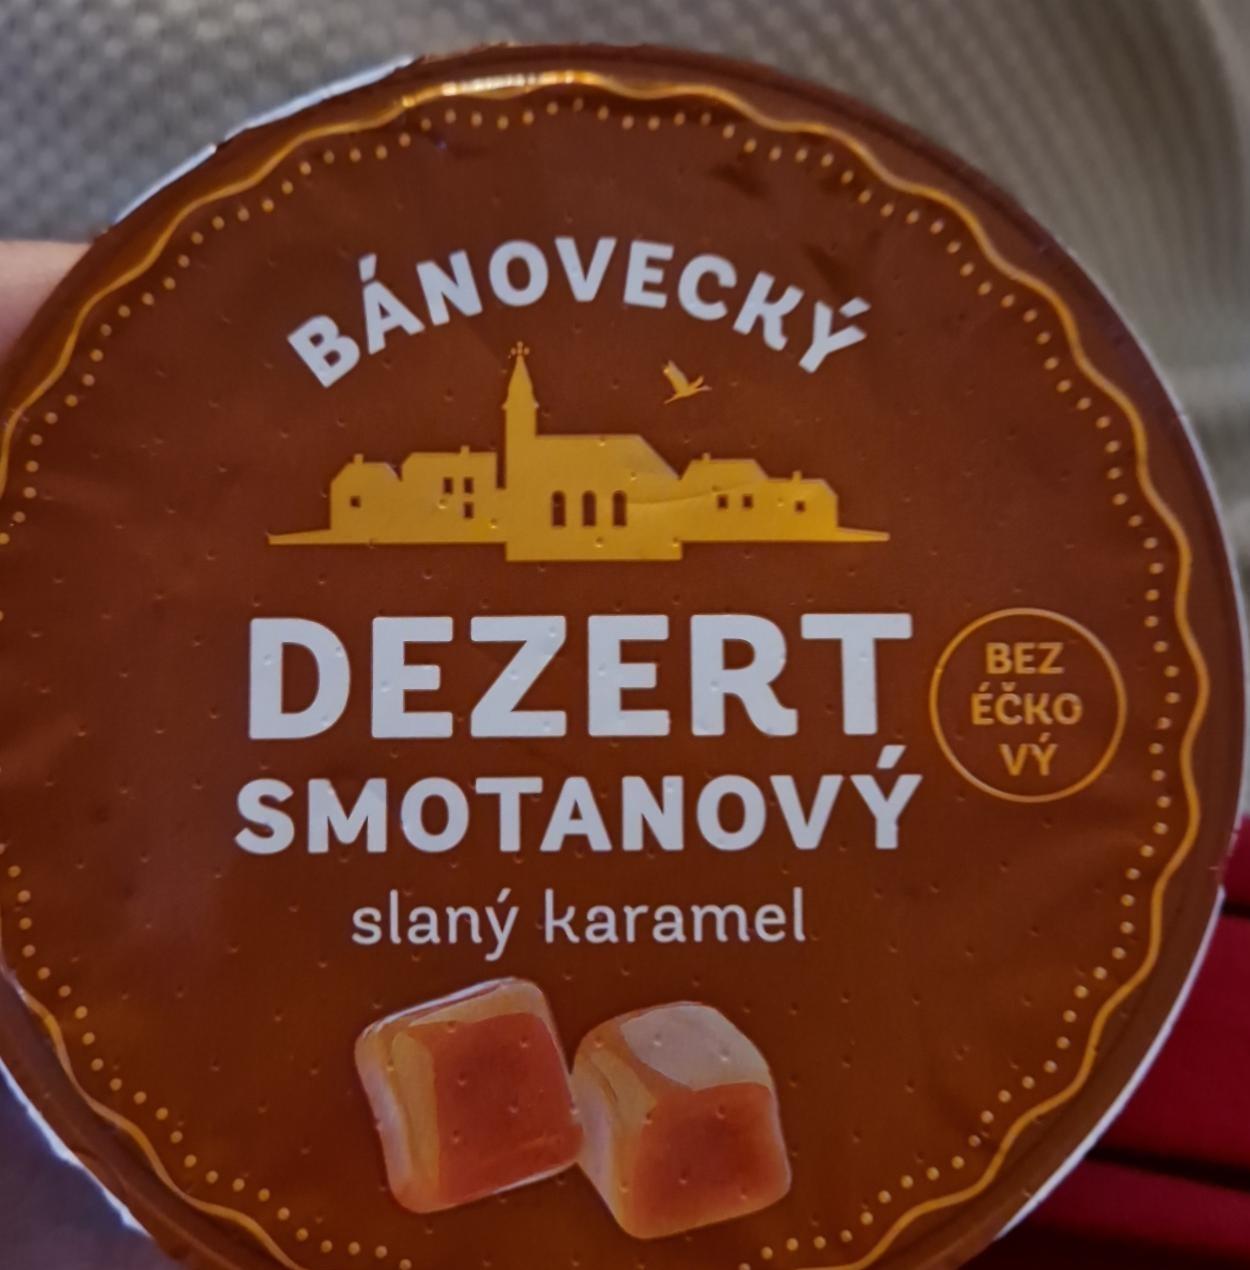 Fotografie - Bánovecky dezert smotanový slaný karamel